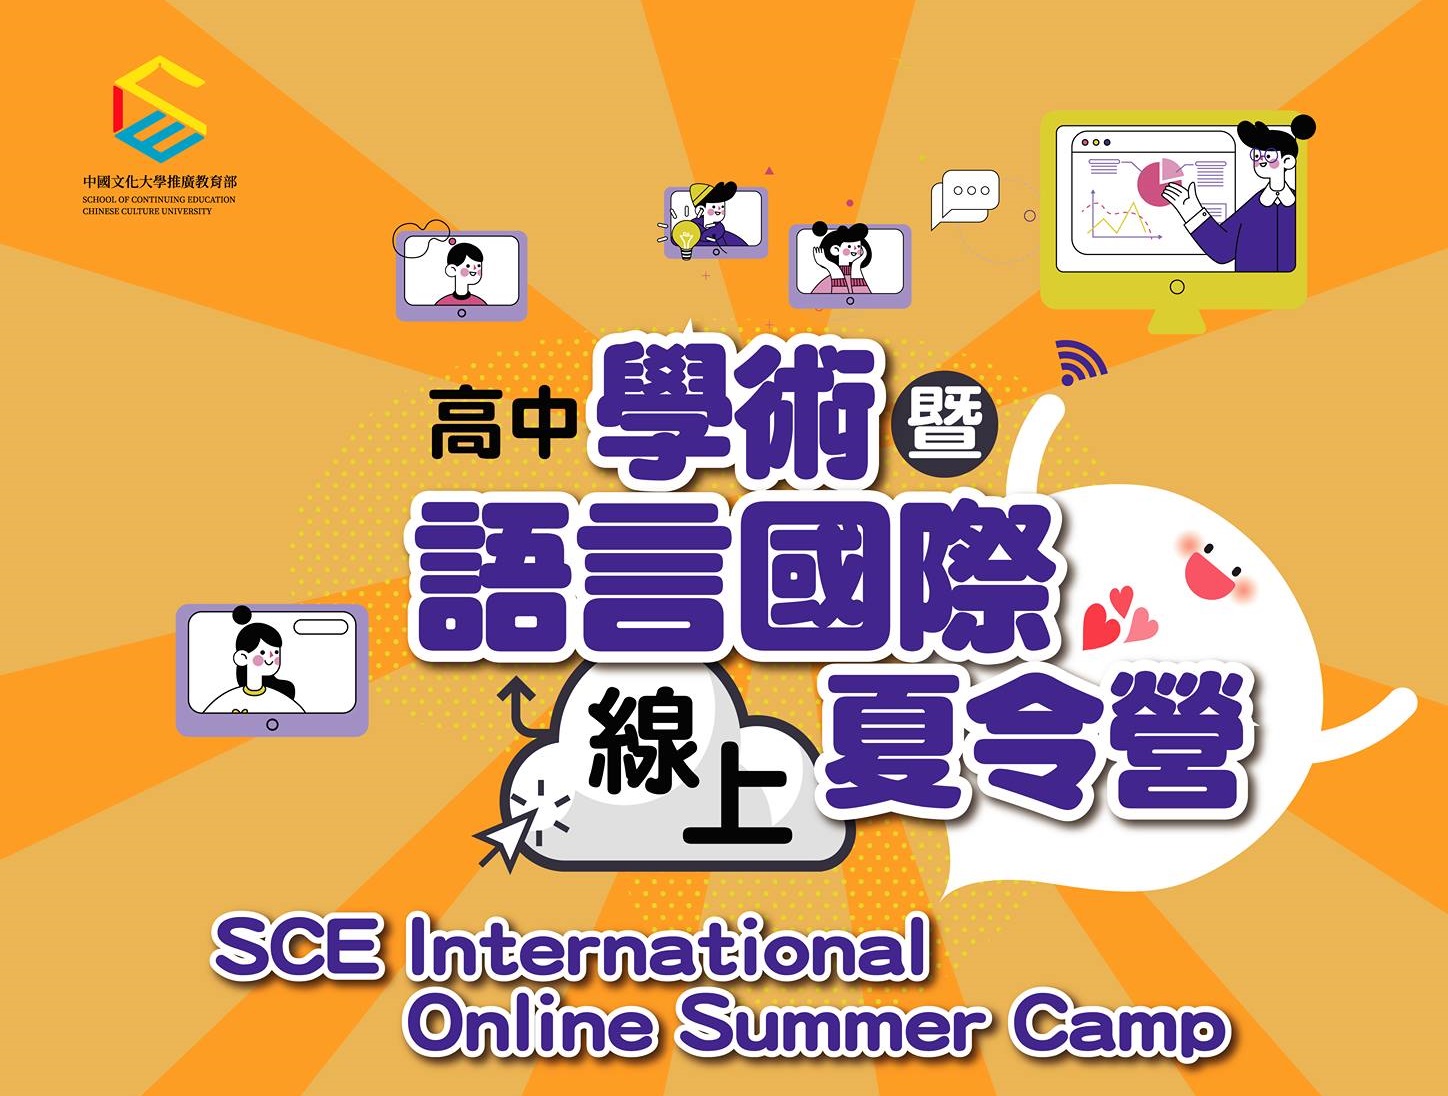 【110.5.18】 文大國際教育發展部「超前部署」和你一起翻轉學習 SCE International Online Summer Camp